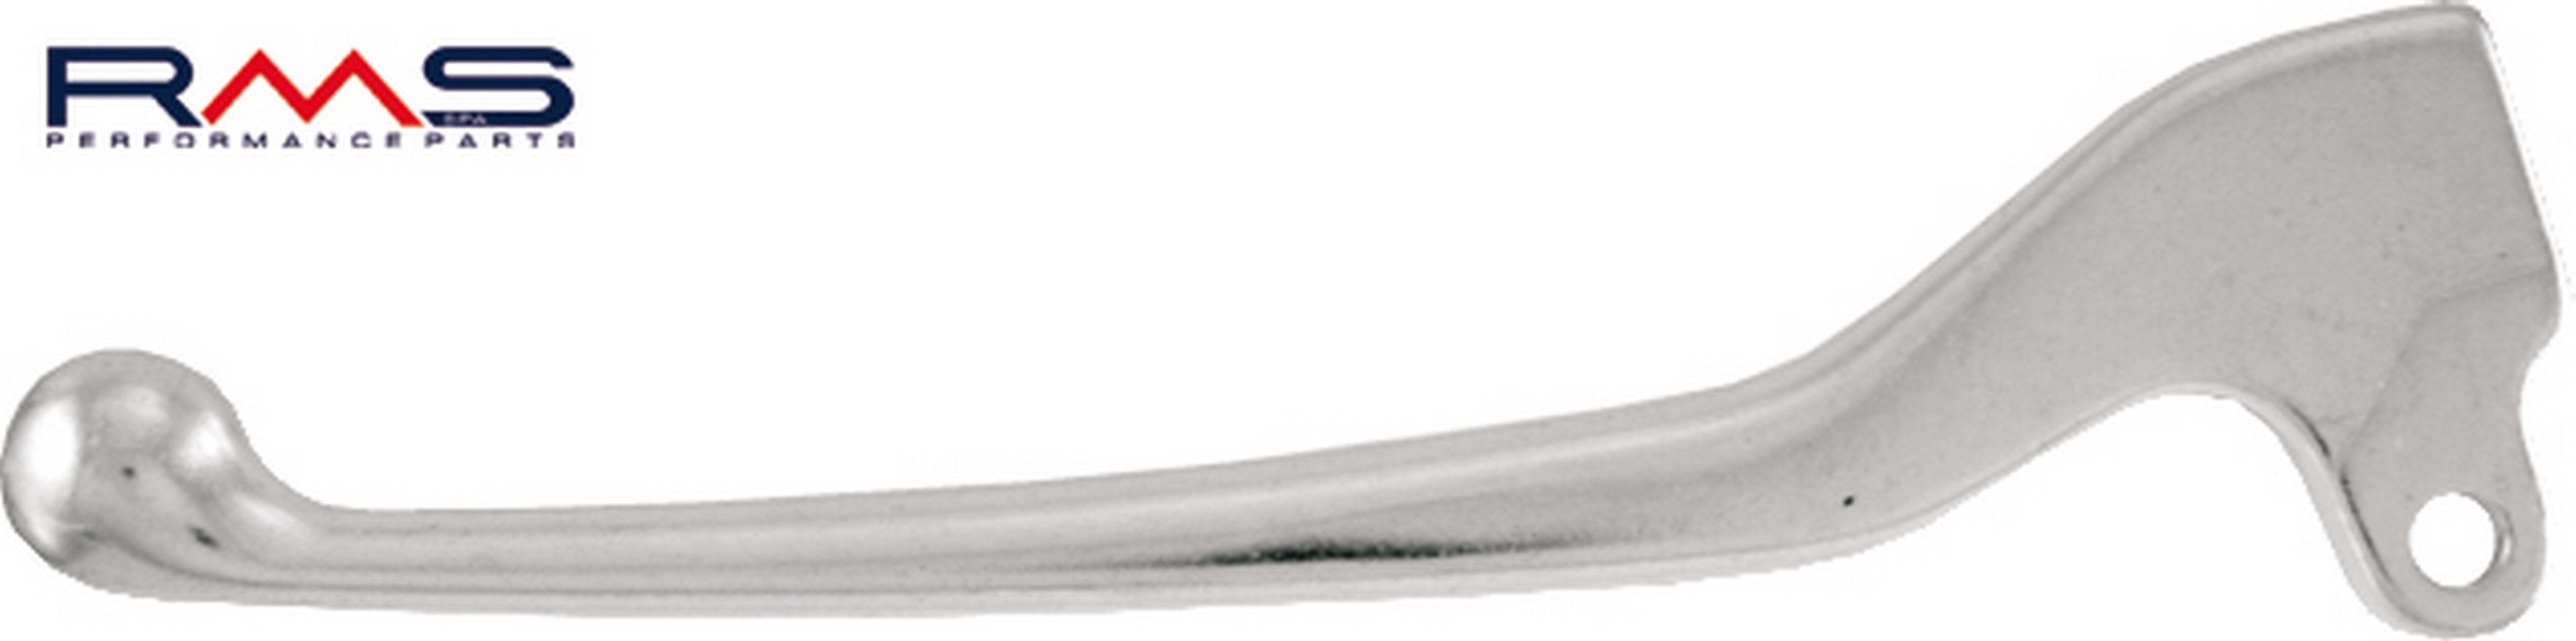 Obrázek produktu Páčka RMS 184100601 levý stříbrná